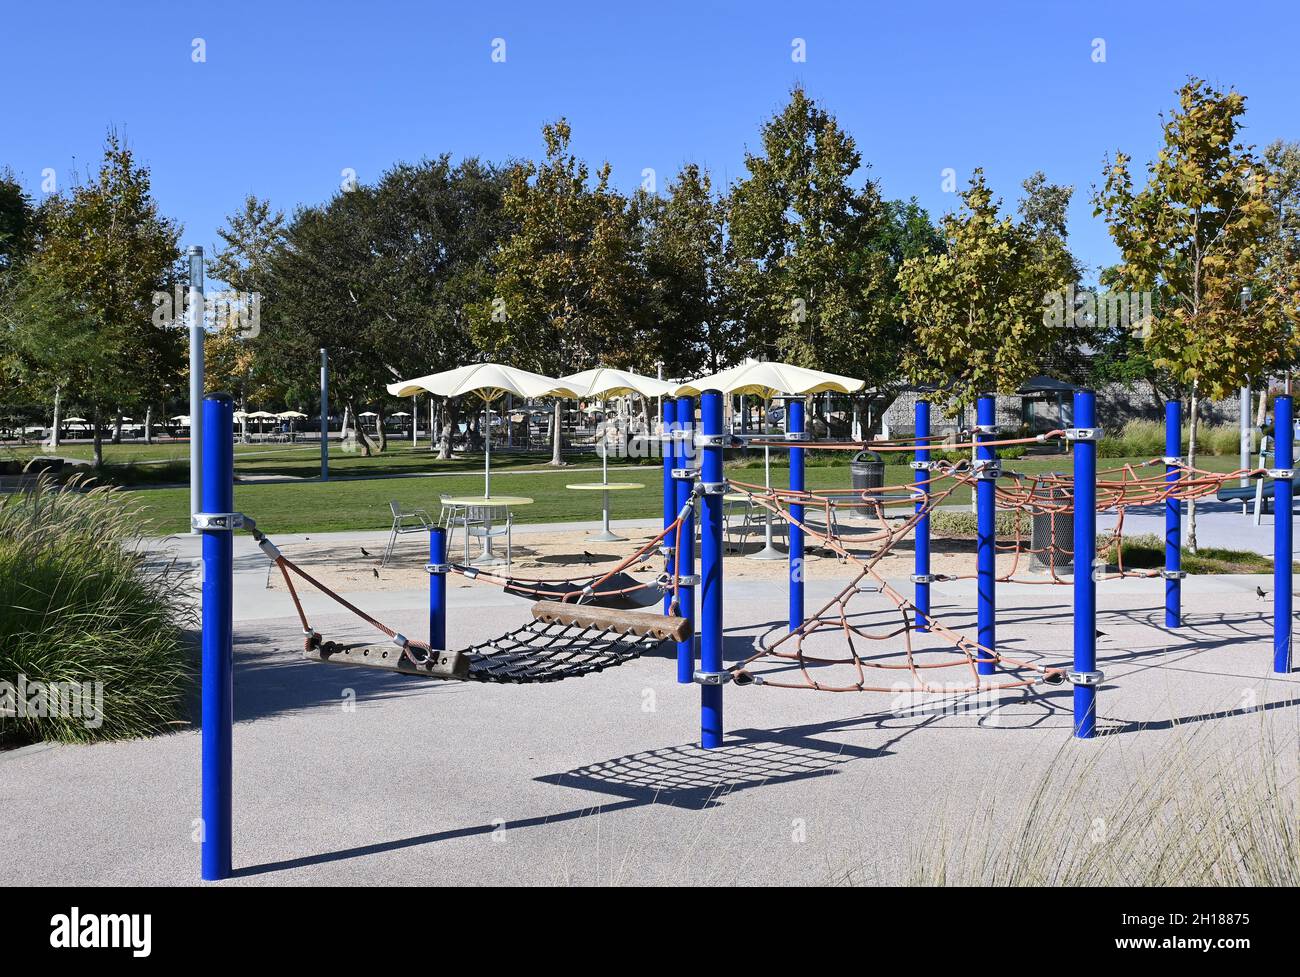 IRVINE, CALIFORNIA - 15 ottobre 2021: Apparecchio di arrampicata nell'area giochi per bambini con varie attrezzature per bambini piccoli. Foto Stock